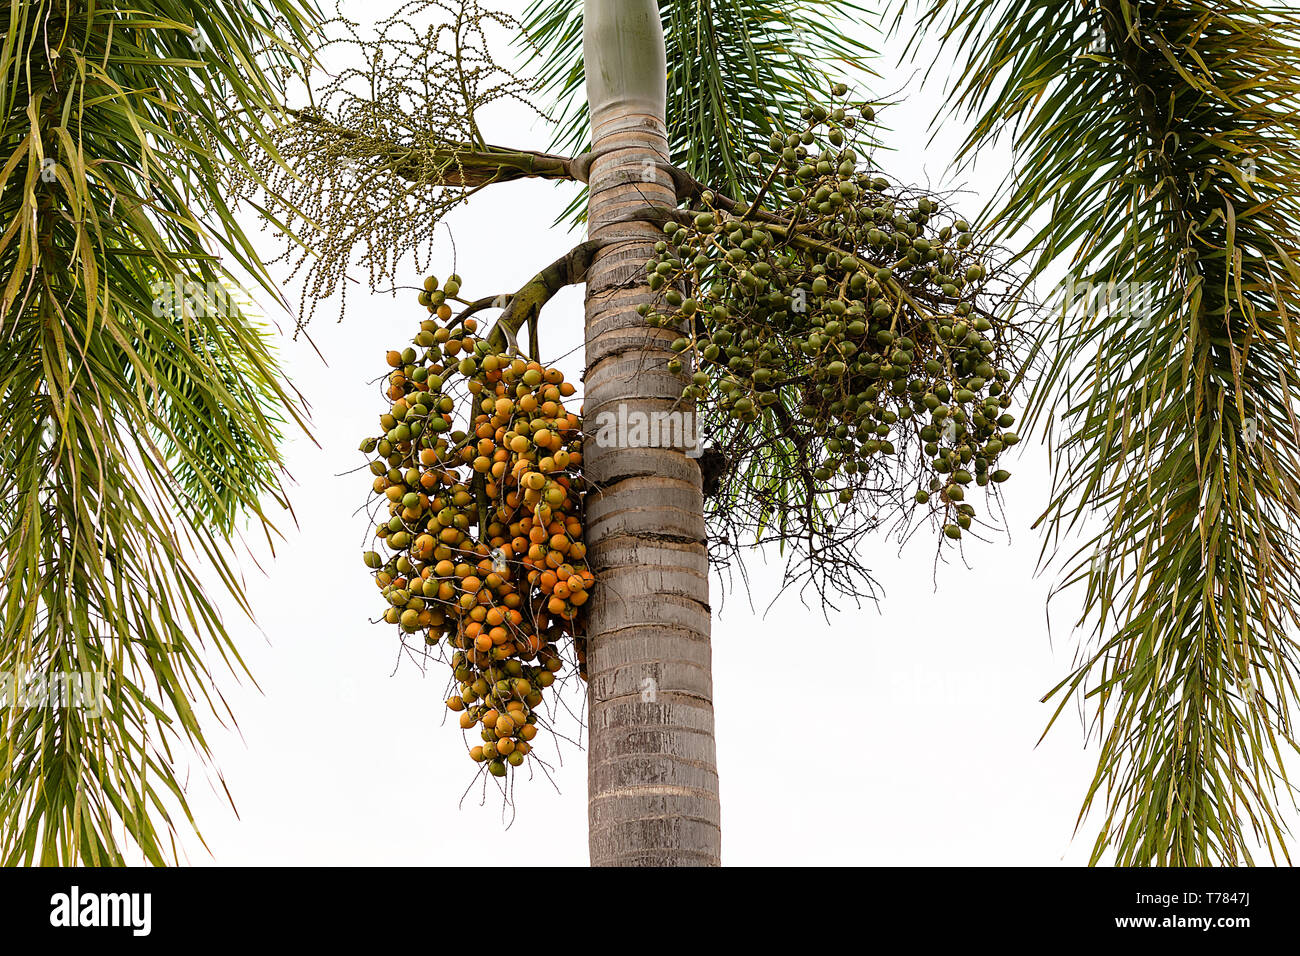 Fruta de la palma -decoración ornamental planta en jardines, Cyrtostachys renda lacre palm, palm Raja pintalabios Foto de stock